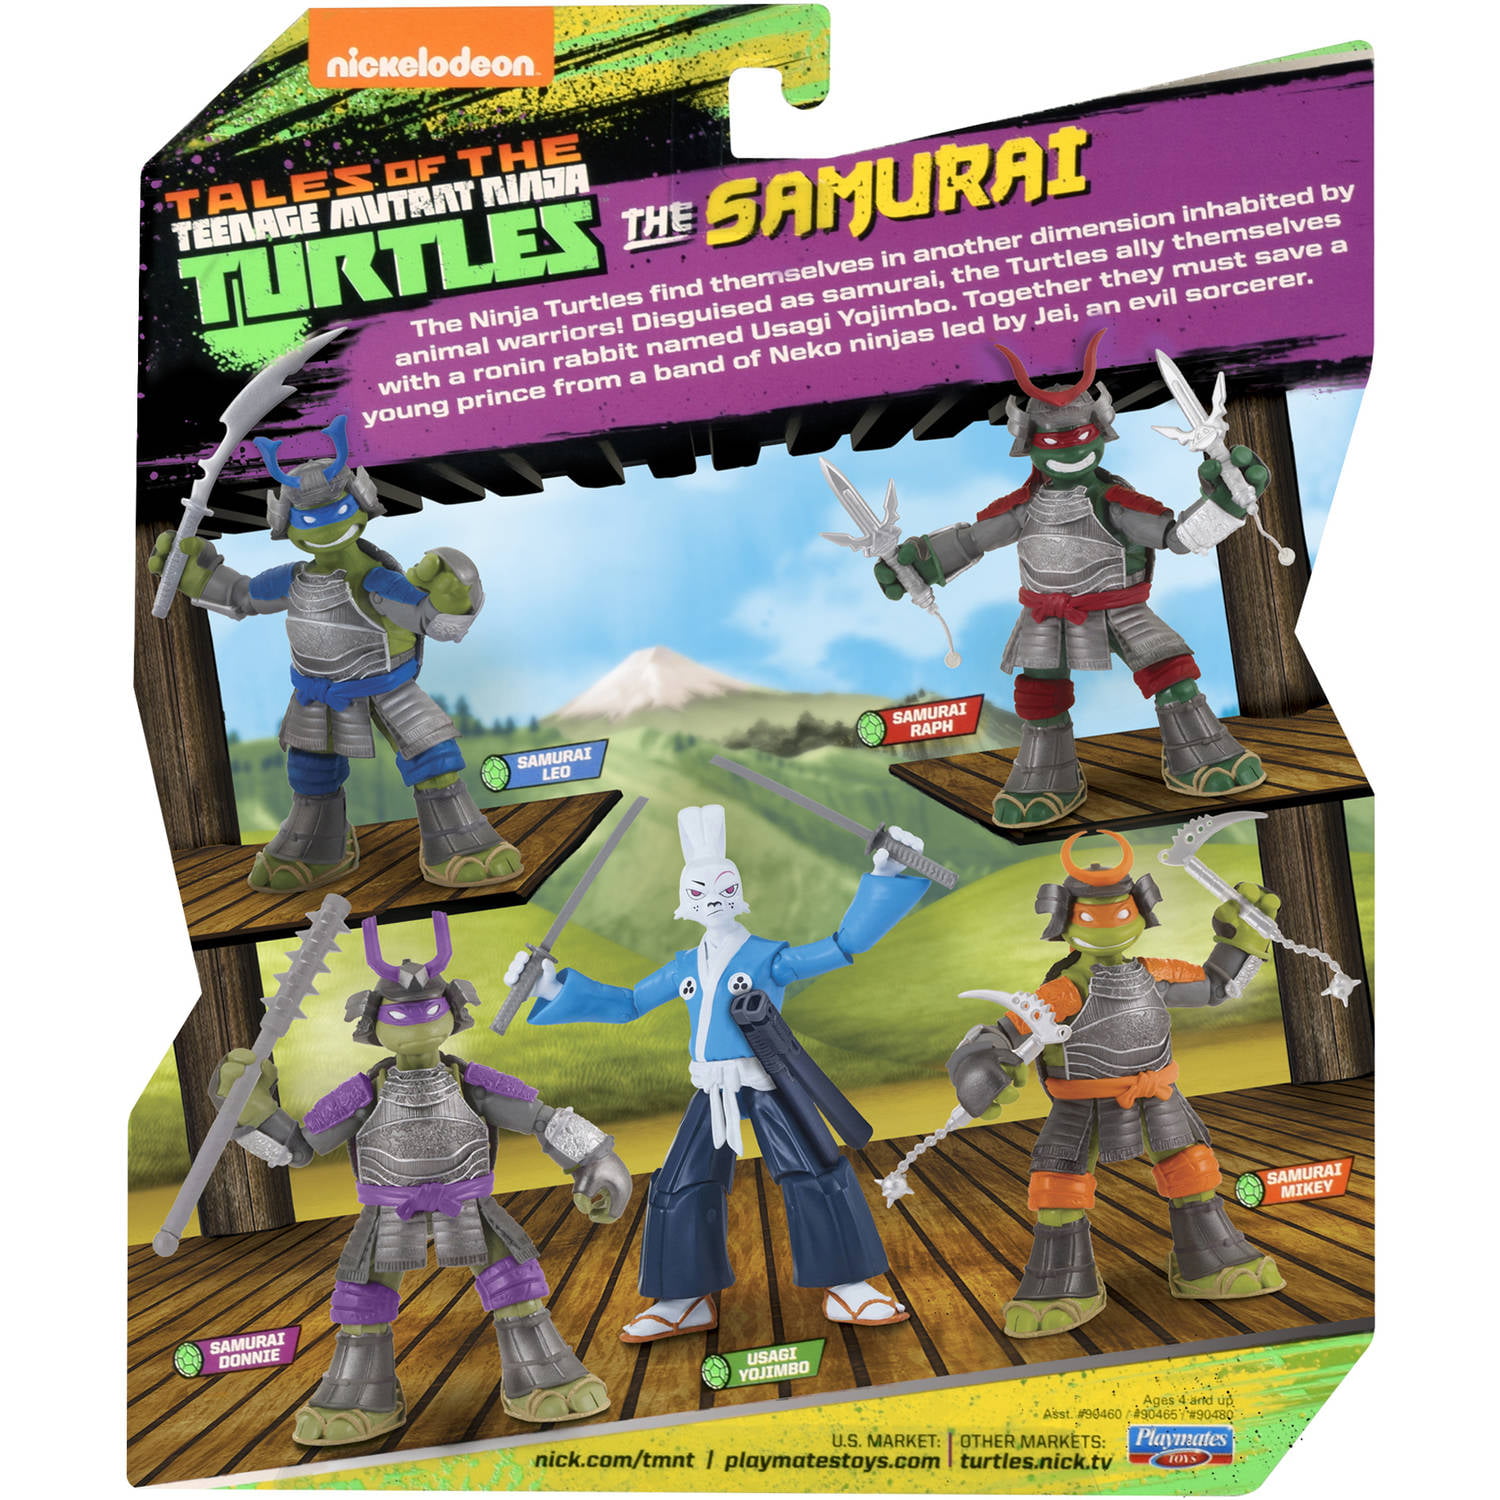 Takara Playmates TMNT Teenage Mutant Ninja Turtles 5302 Samurai